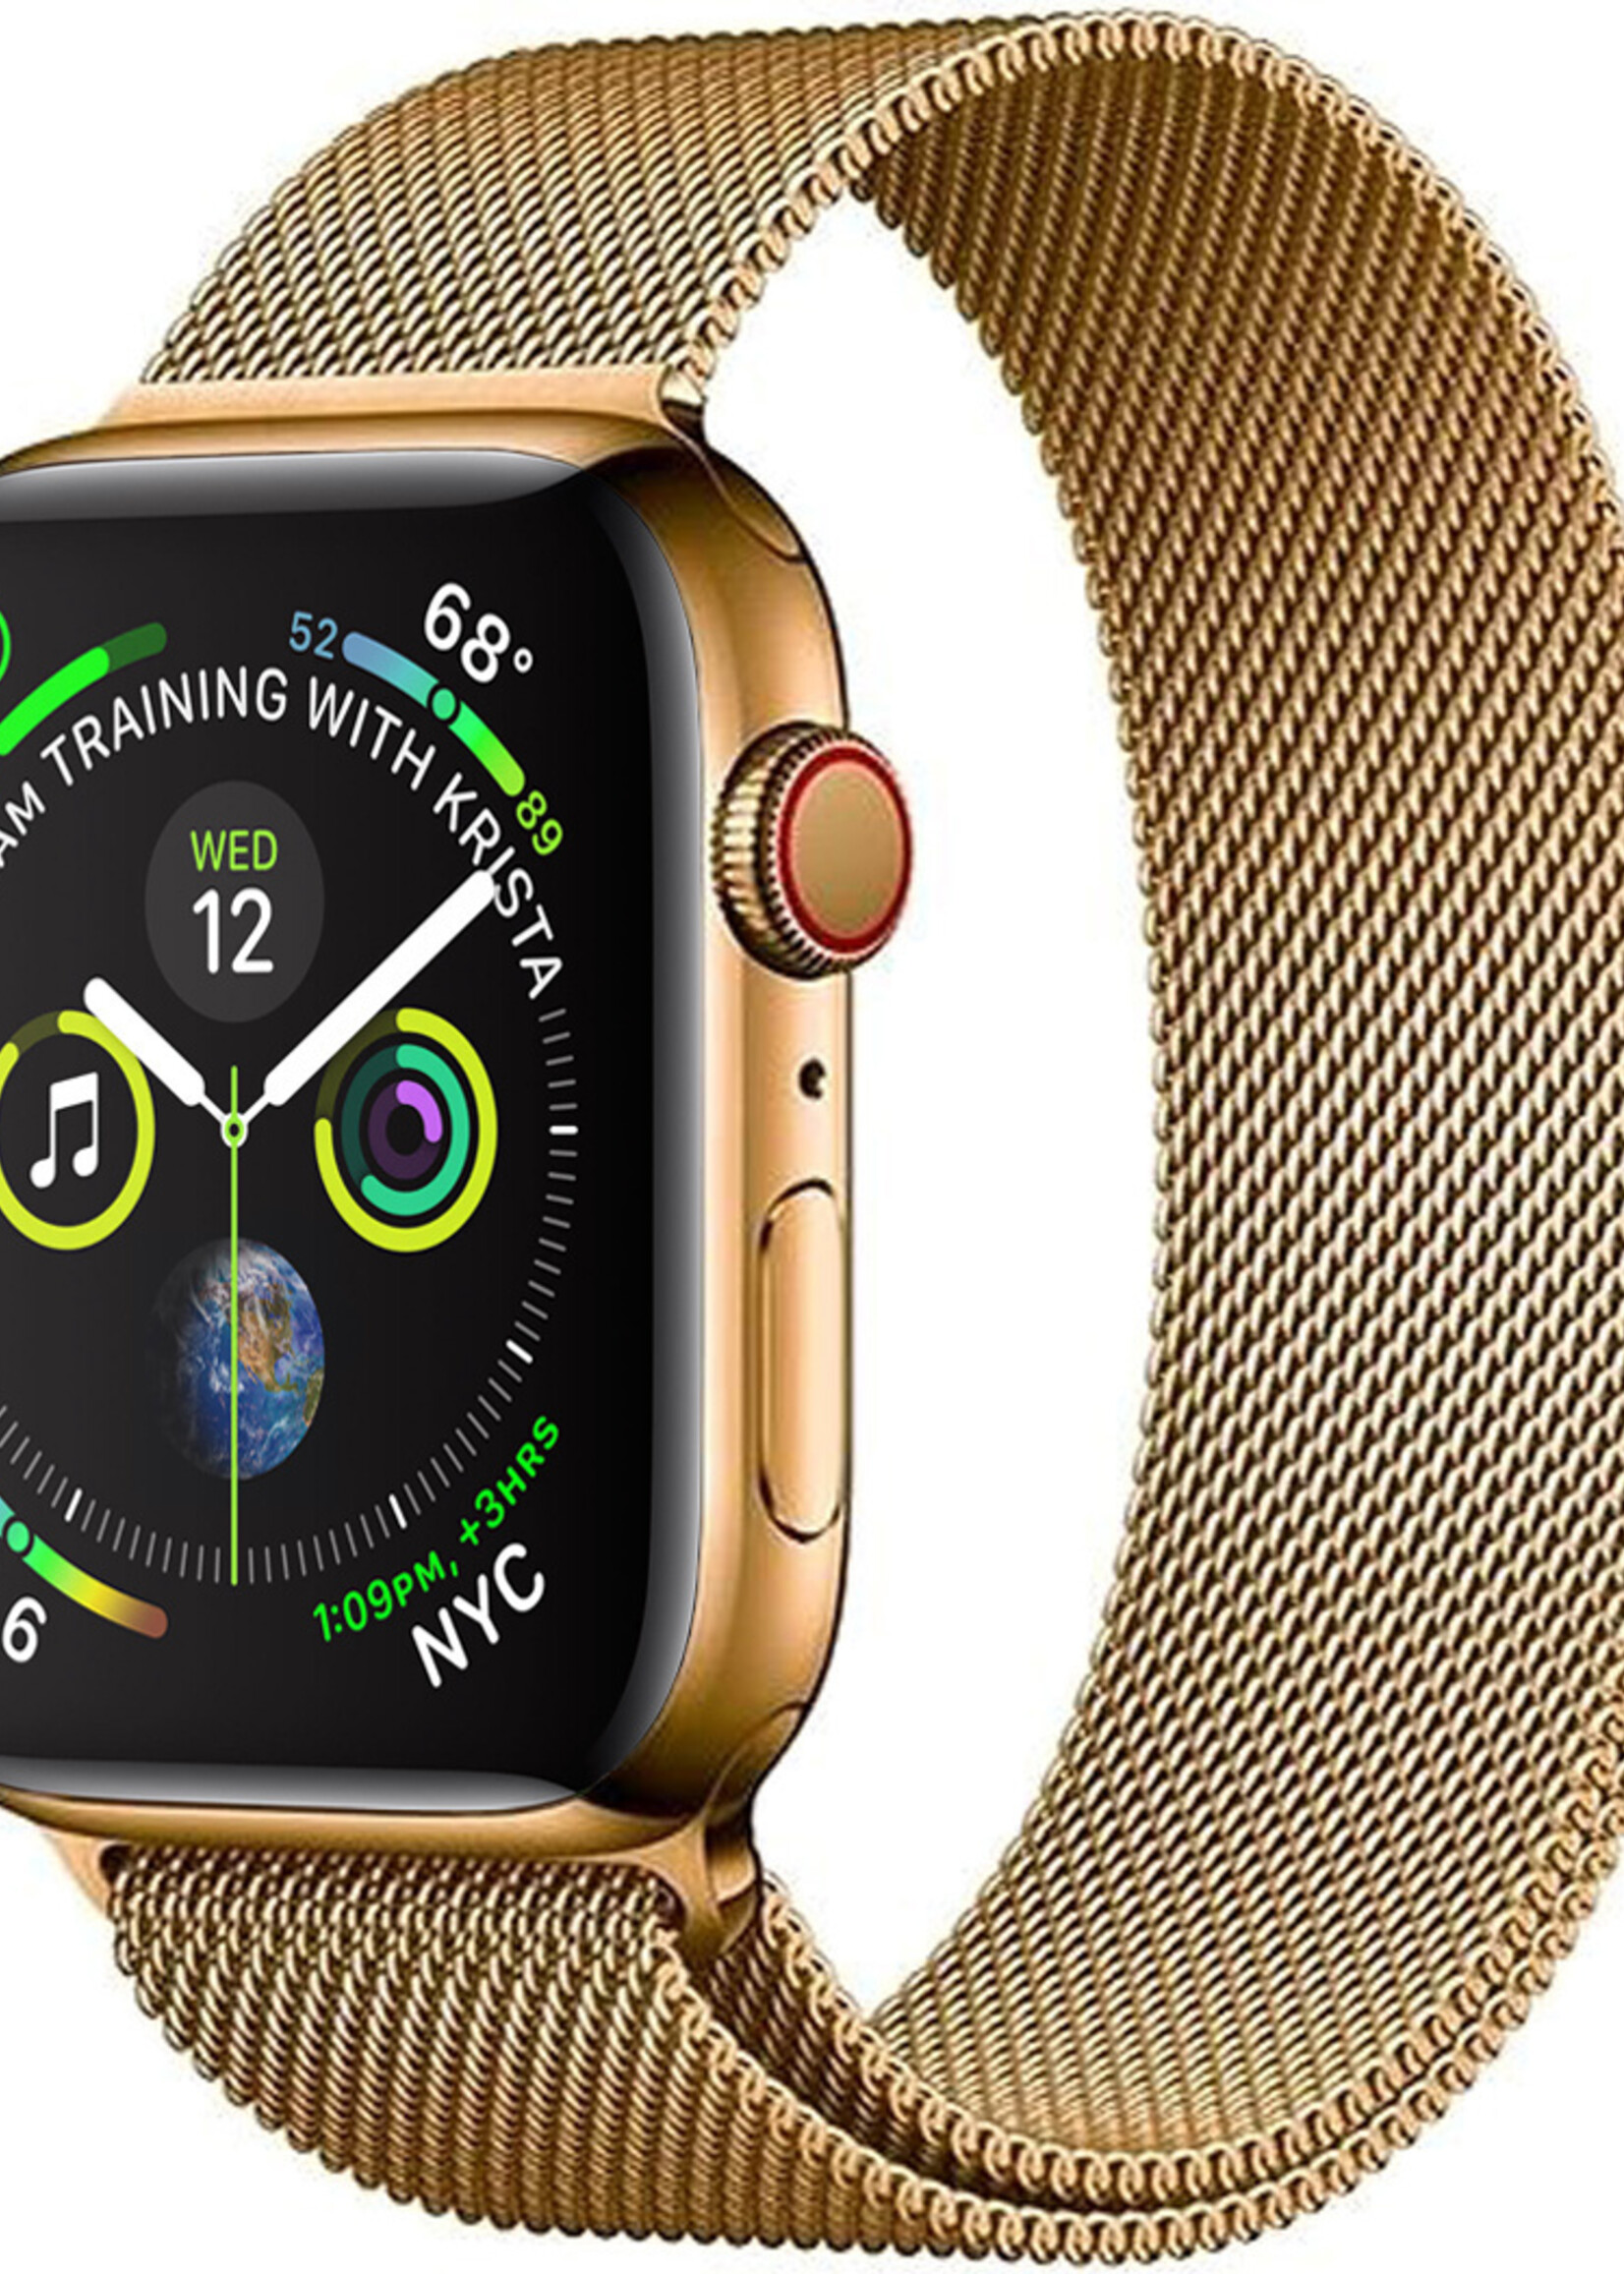 BTH Geschikt Voor Apple Watch 8 Bandje Goud Horloge Bandje Milanees Met Magneetsluiting (45 mm)